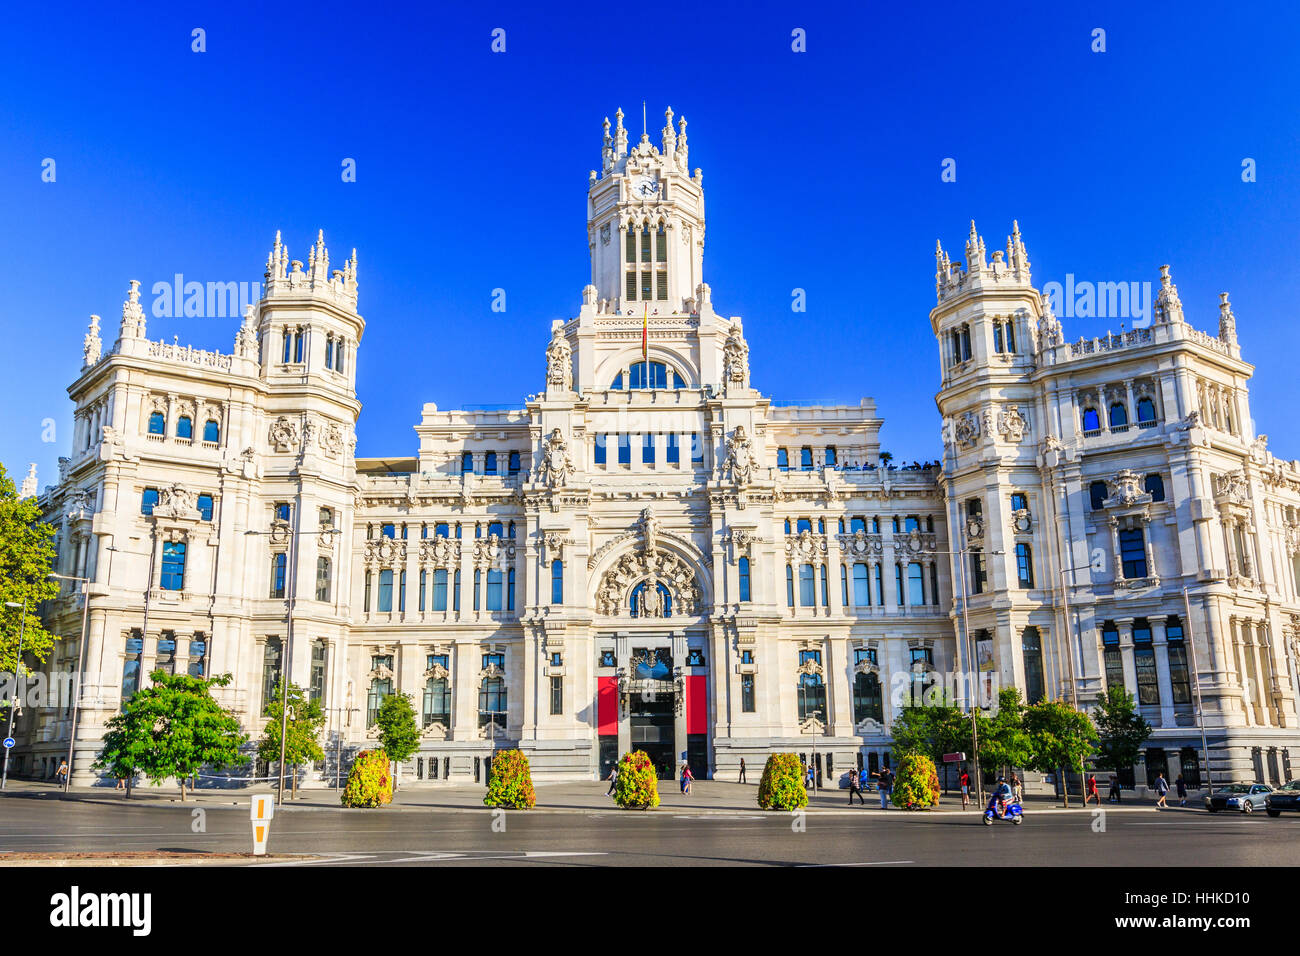 Madrid, España. Palacio de Comunicaciones (City Hall) de la Plaza de Cibeles. Foto de stock